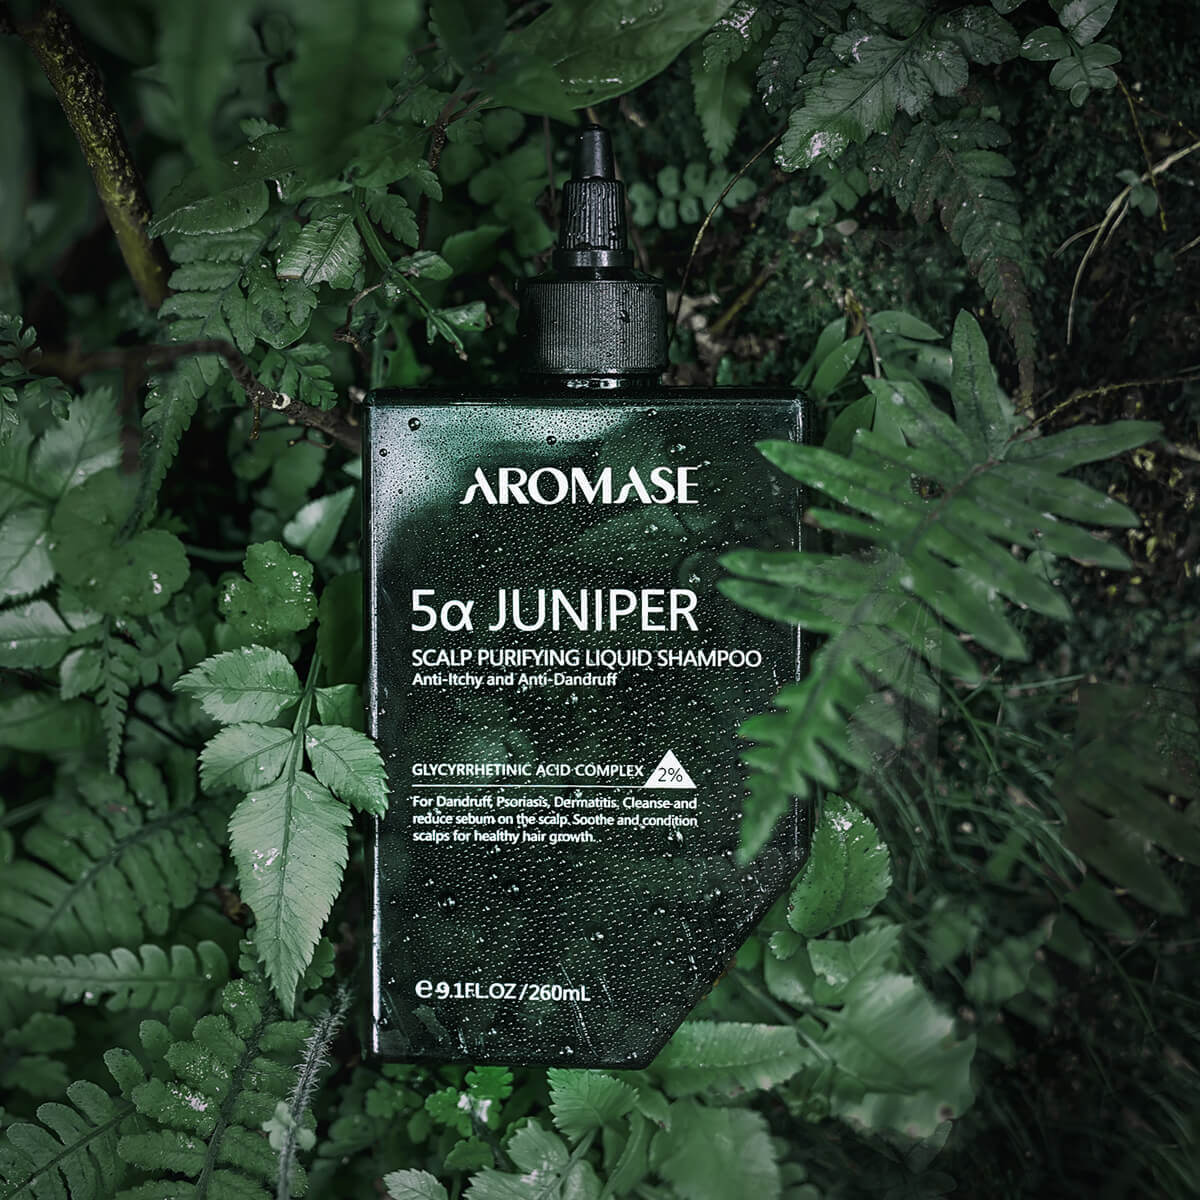 AROMASE-juniper liquid shampoo-Awards